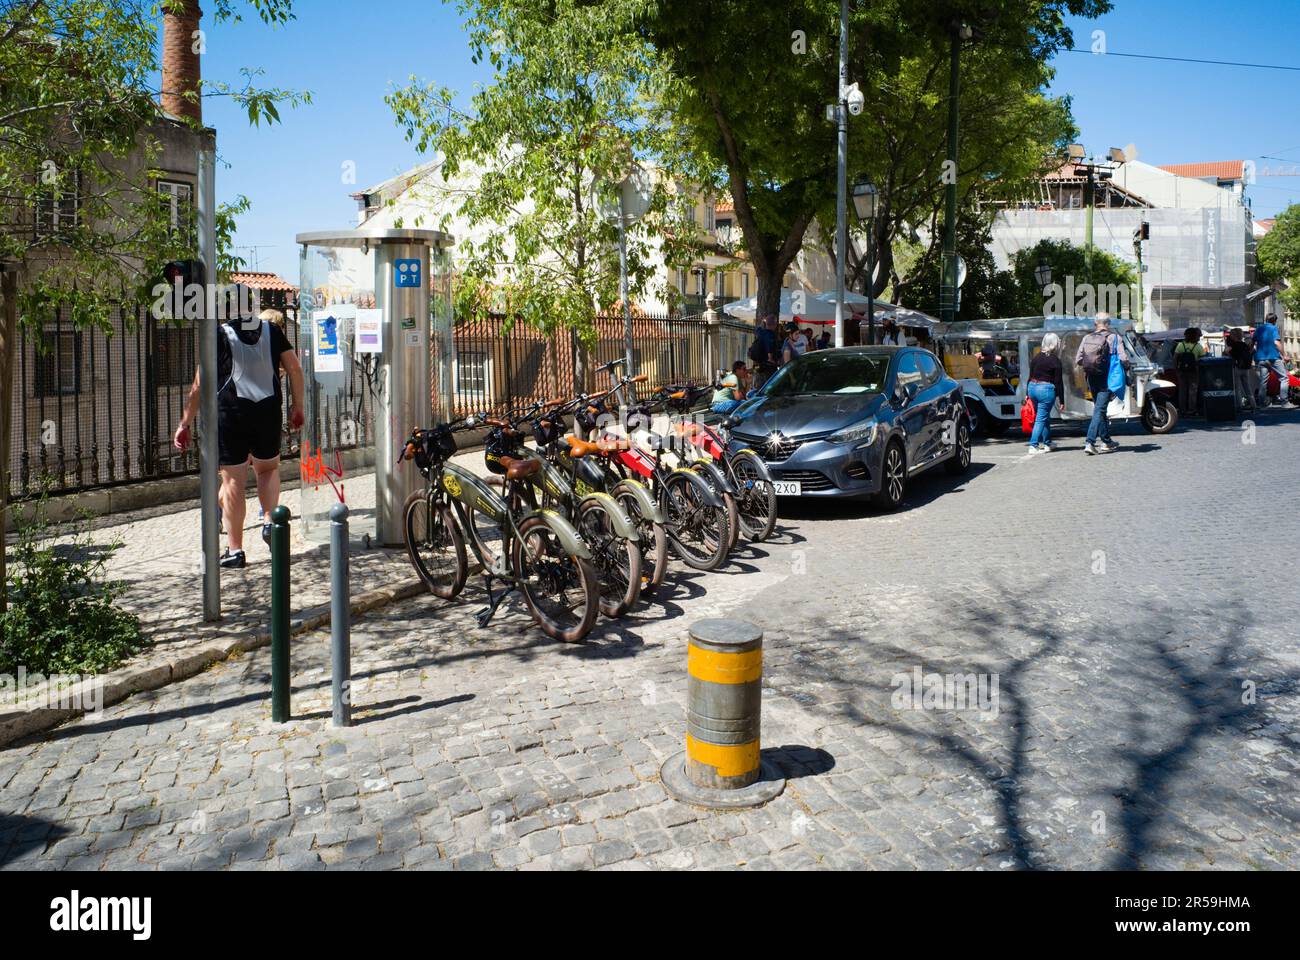 Leihfahrräder für Elektrofahrräder im touristischen Teil von Lissabon Stockfoto